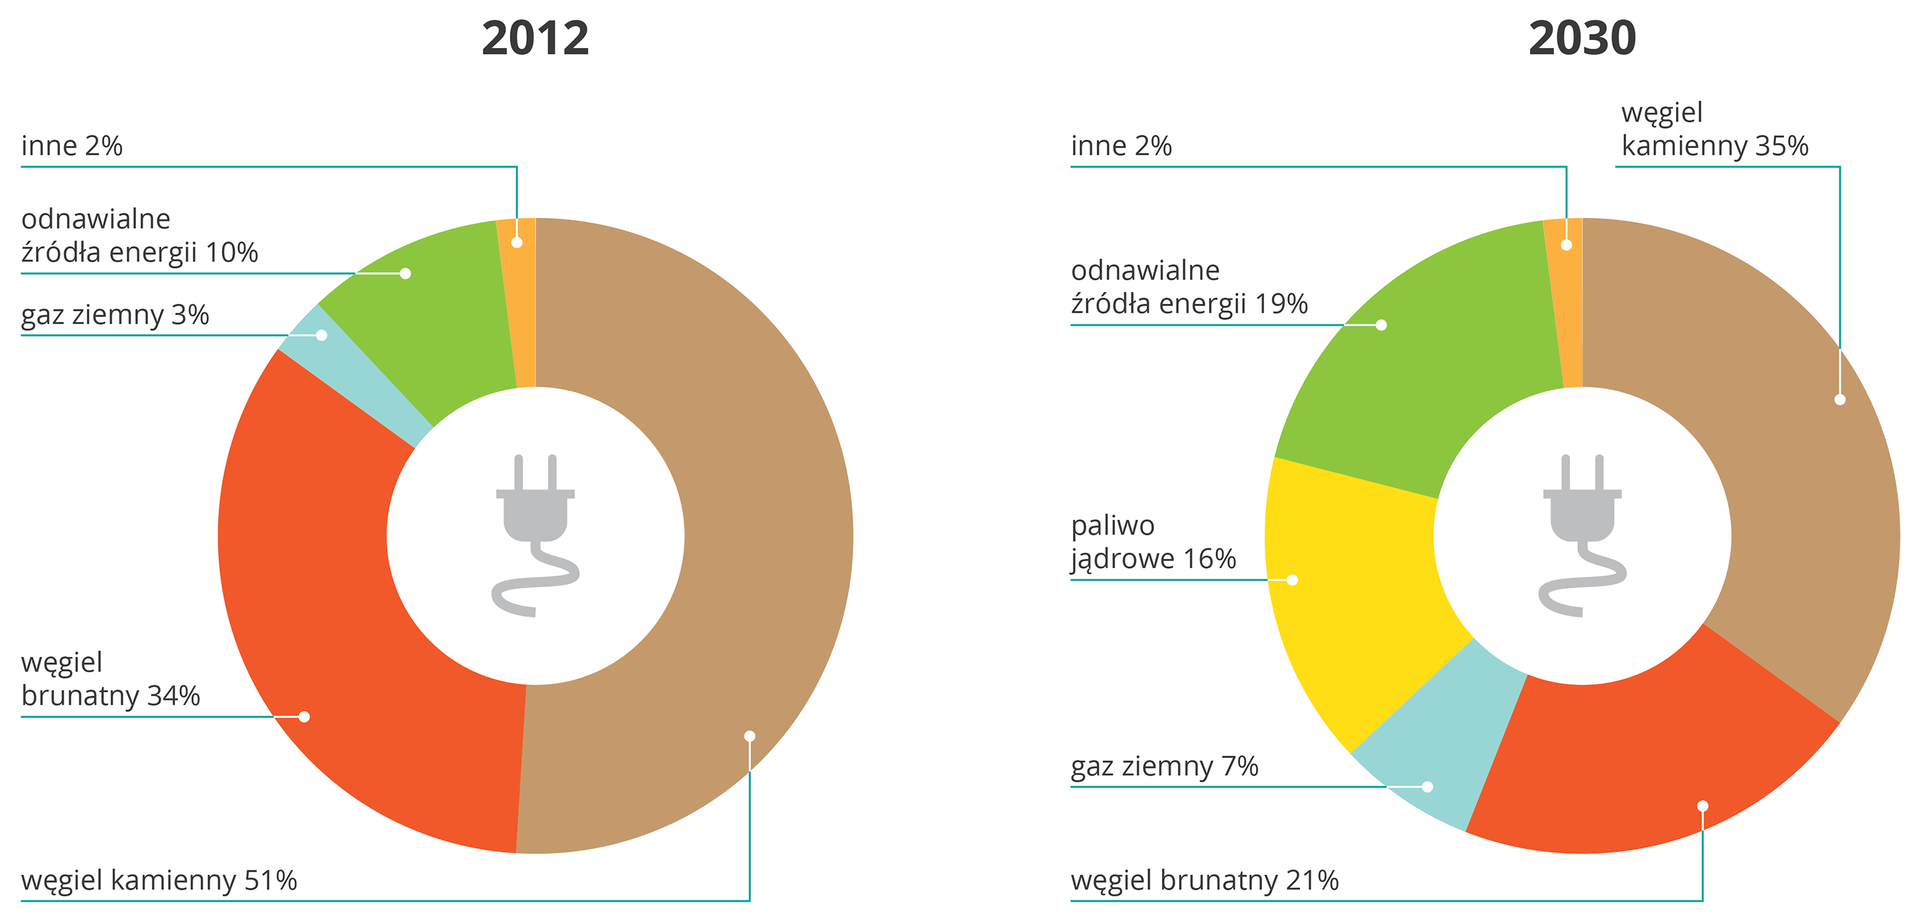 Diagram przedstawia pozyskiwania energii elektrycznej w Polsce w roku 2012 i 2030 (prognoza). Obecnie węgiel kamienny staowi 51% paliw, brunatny 34%, a alternatywne źródła energii 10%. W roku 2030 węgiel kamienny będzie stanowić 35%, brunatny 21, a źródła alternatywne 19%.